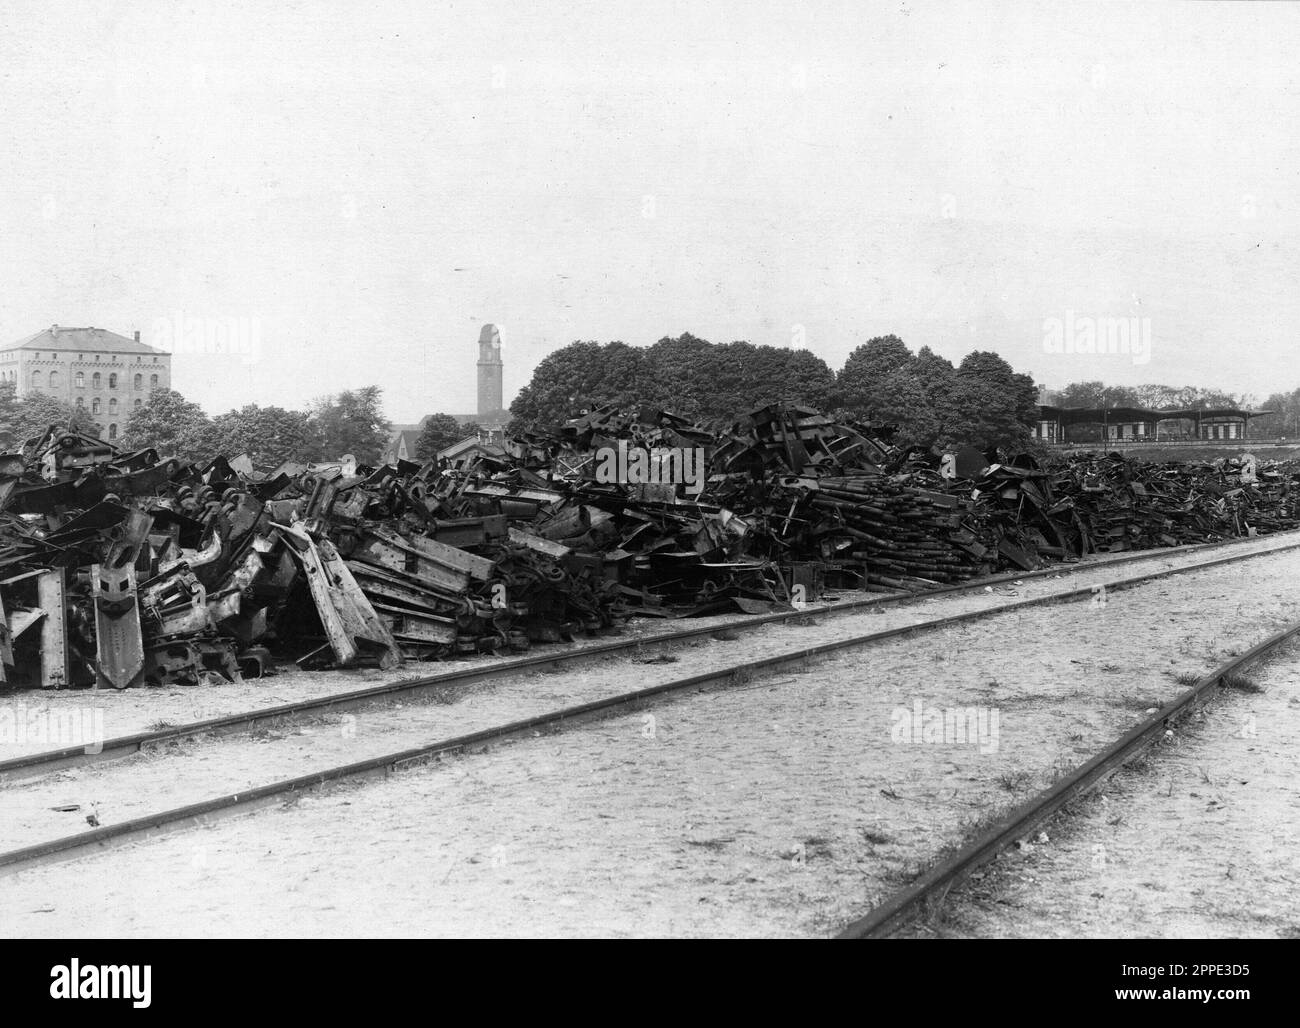 Zerstörung deutscher Munition und Artillerie im Jahre 1919 während der alliierten Besetzung des Rheinlandes. Nach WW1 besetzten die Alliierten das linke Rheinufer 11 Jahre lang. Stockfoto